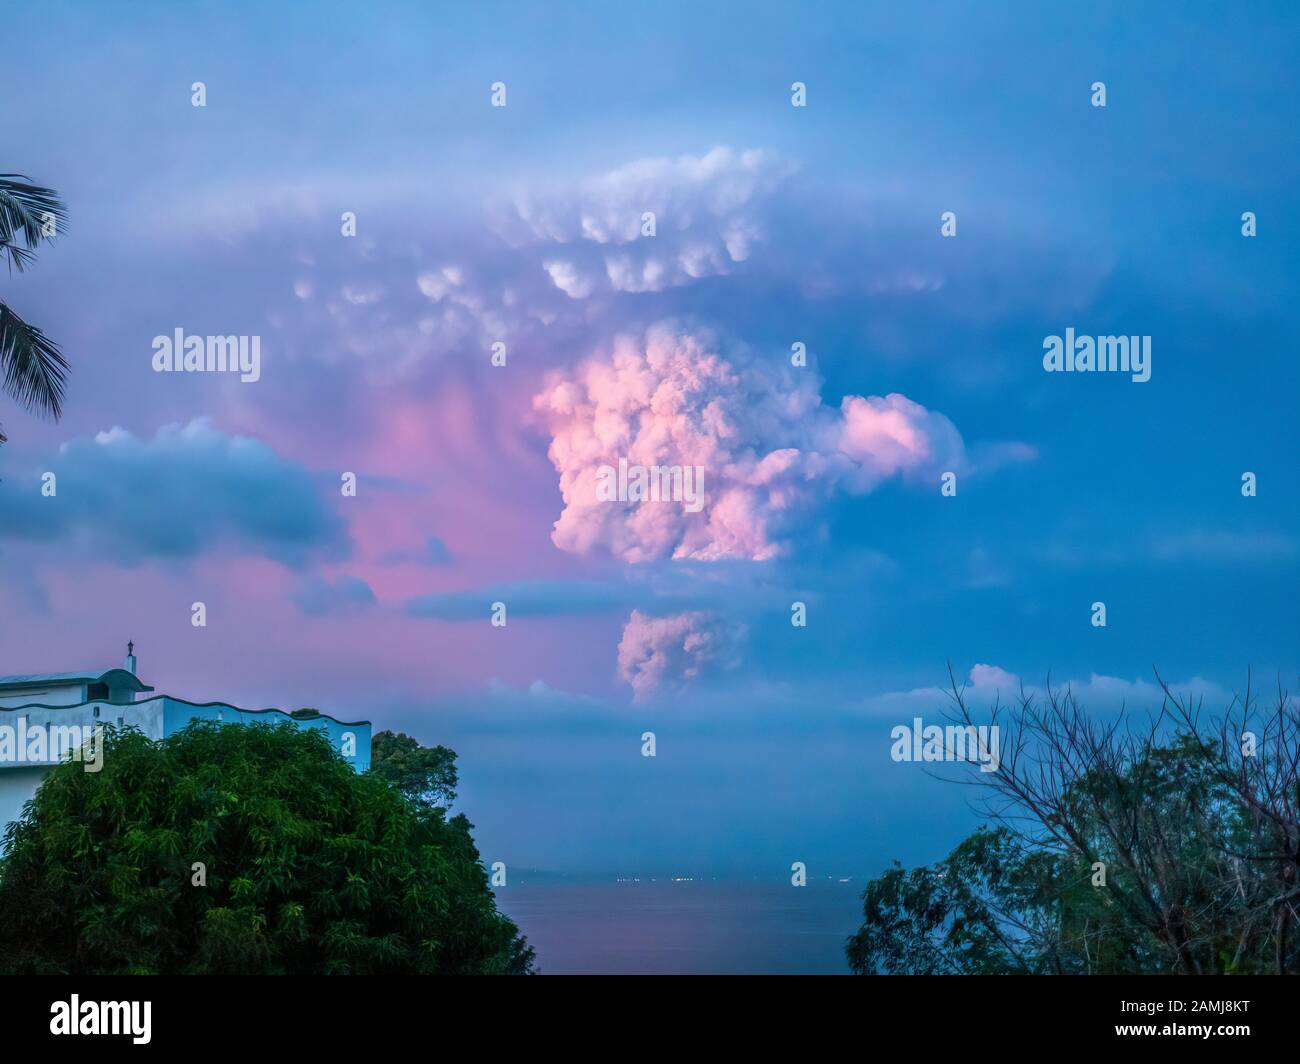 Eruzione del vulcano Taal al al tramonto, 12 gennaio 2020, il suo pennacchio visibile nel cielo sopra le luci della città di Batangas, vista da Mindoro È, a 30 miglia di distanza. Foto Stock